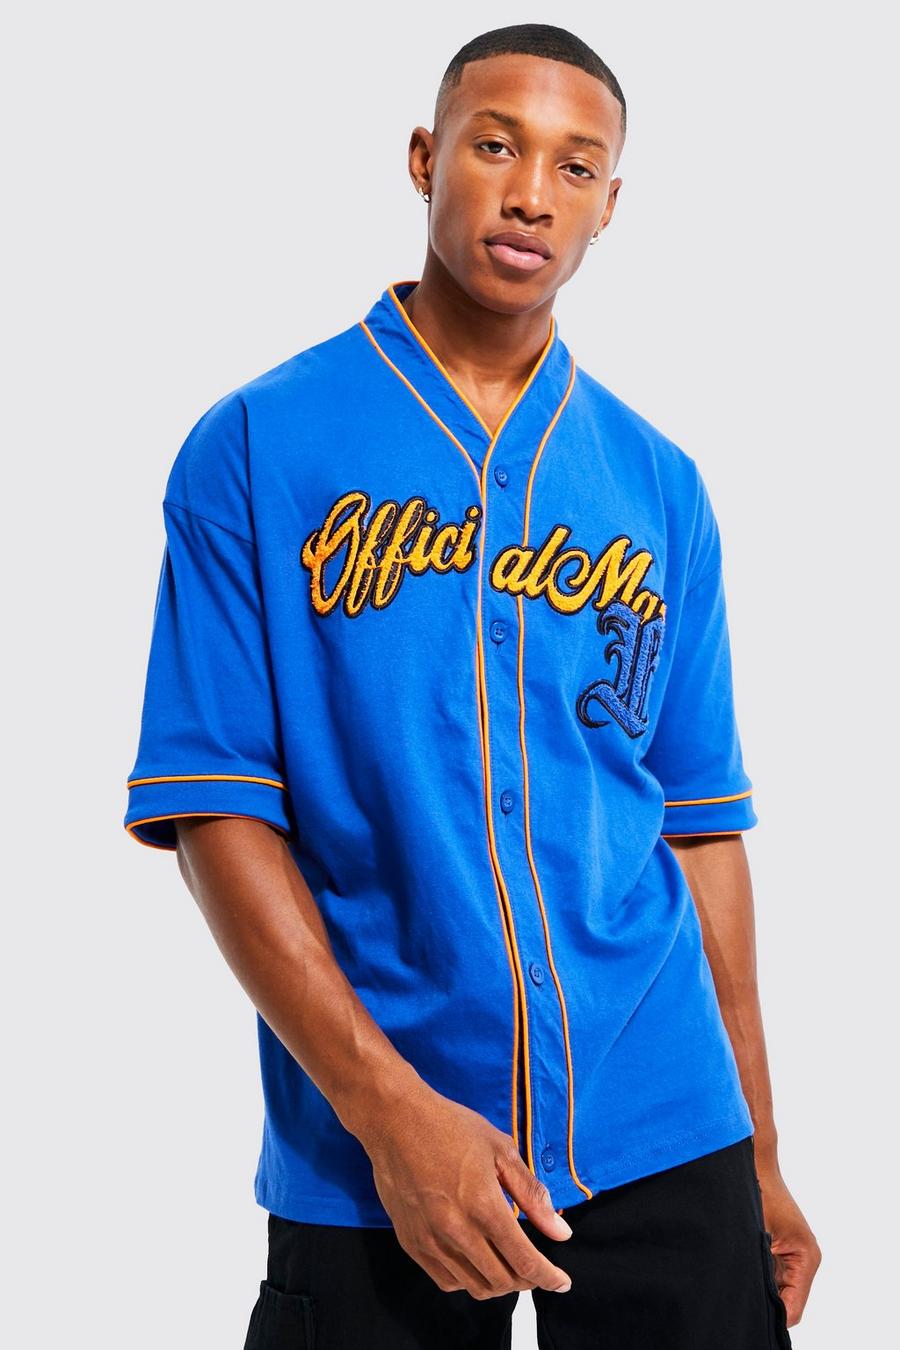 Mets Baseball Jersey! Boyfriend Jeans! Gold Chain!